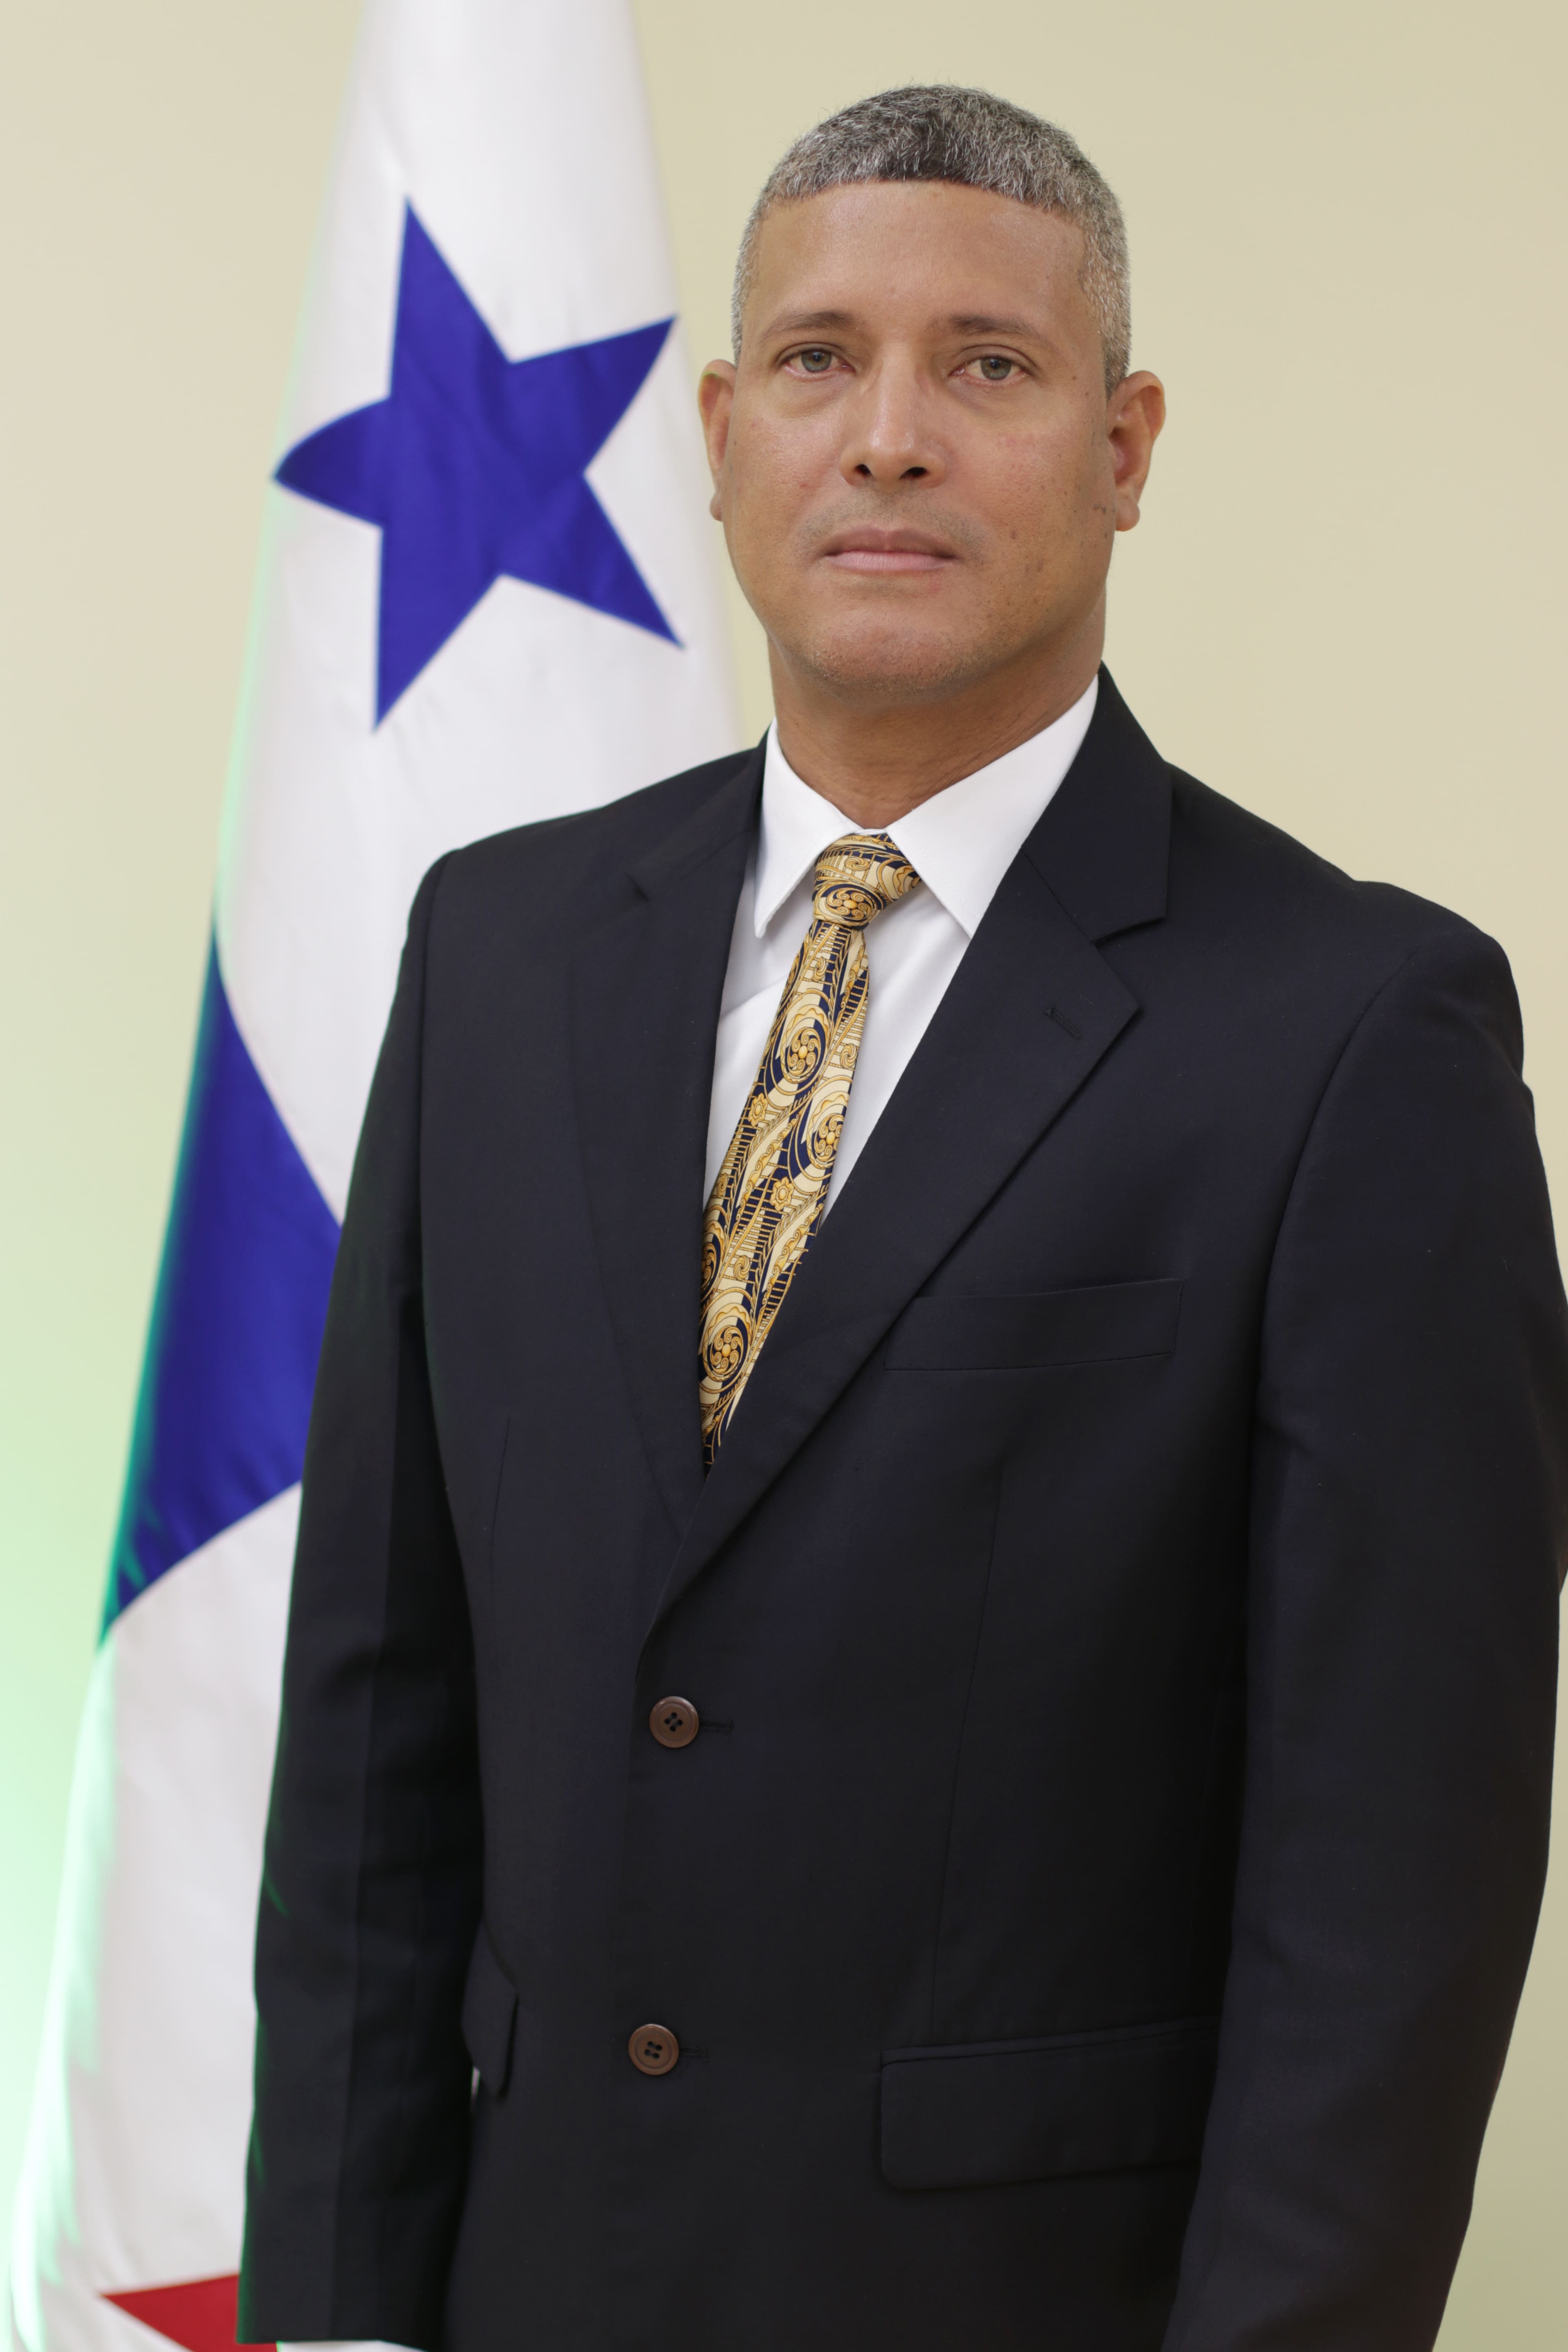 Mgtr. Ricardo Benitez